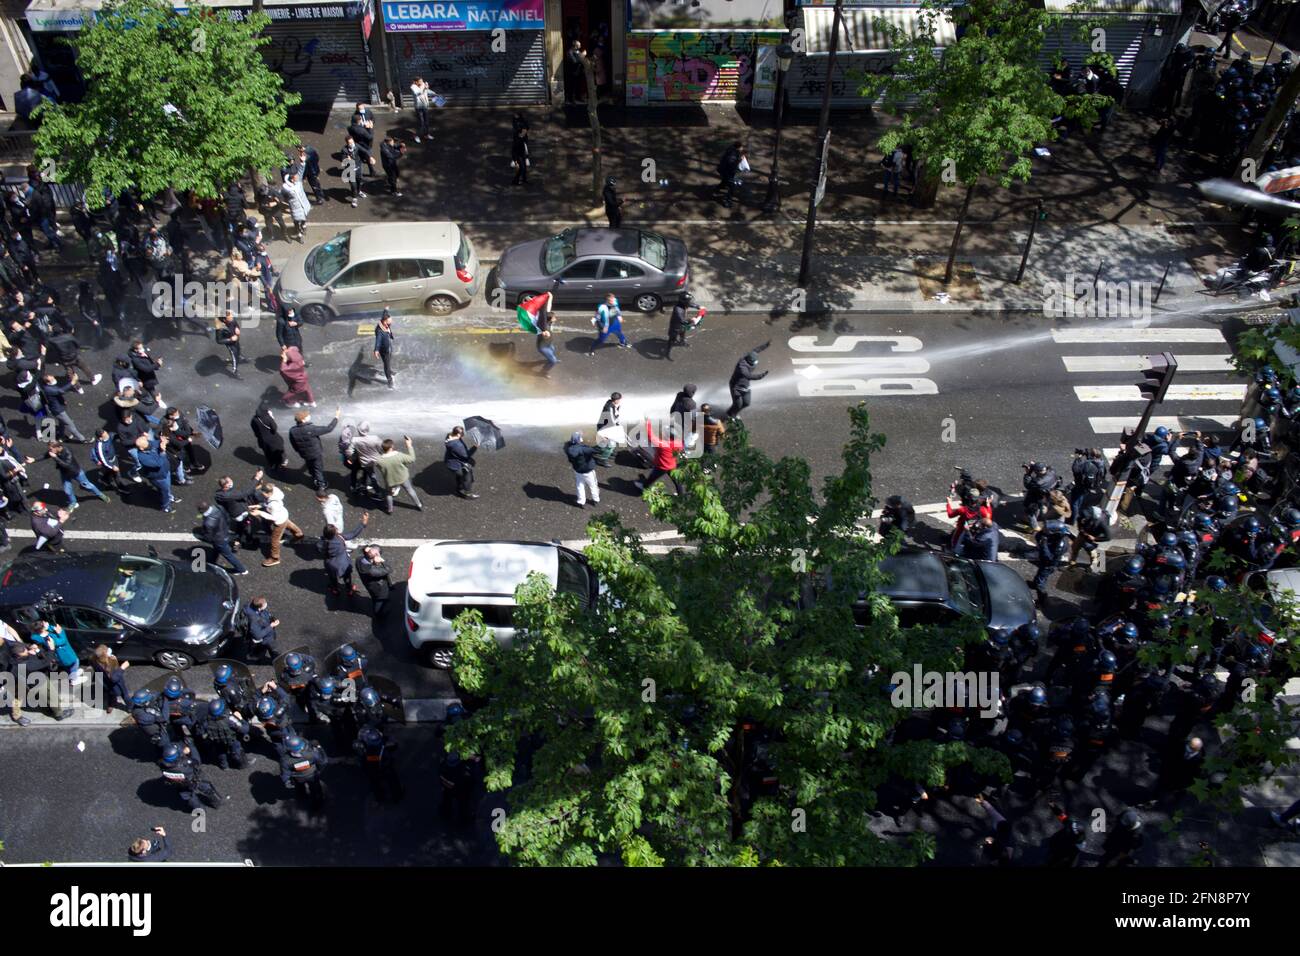 La police a pompier du canon à eau pour disperser les partisans palestiniens réunis lors de la manifestation Pro-palestinienne, boulevard Barbès, Paris, France, le 15 mai 2021 Banque D'Images